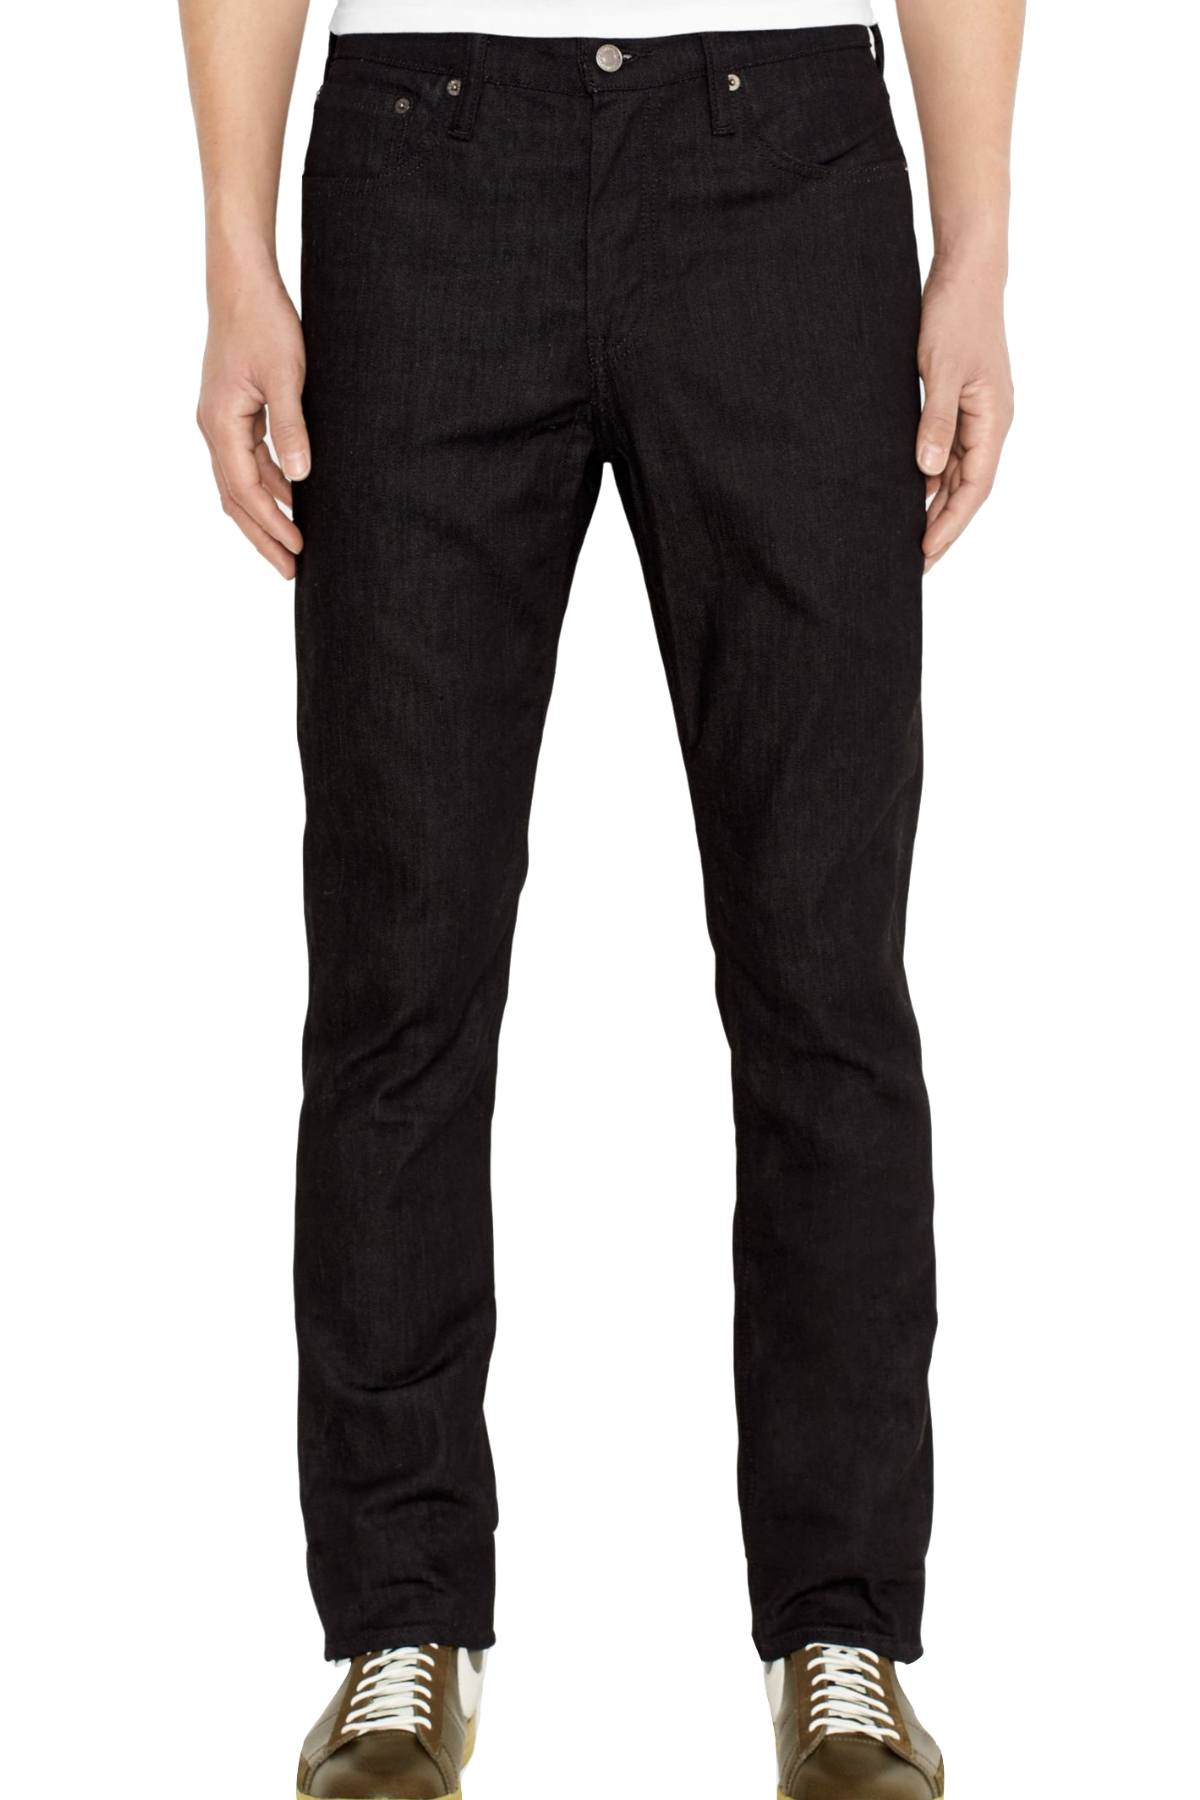 Levi's Black/Rigid 3M-Reflective  511™ Slim-Fit Commuter Jeans